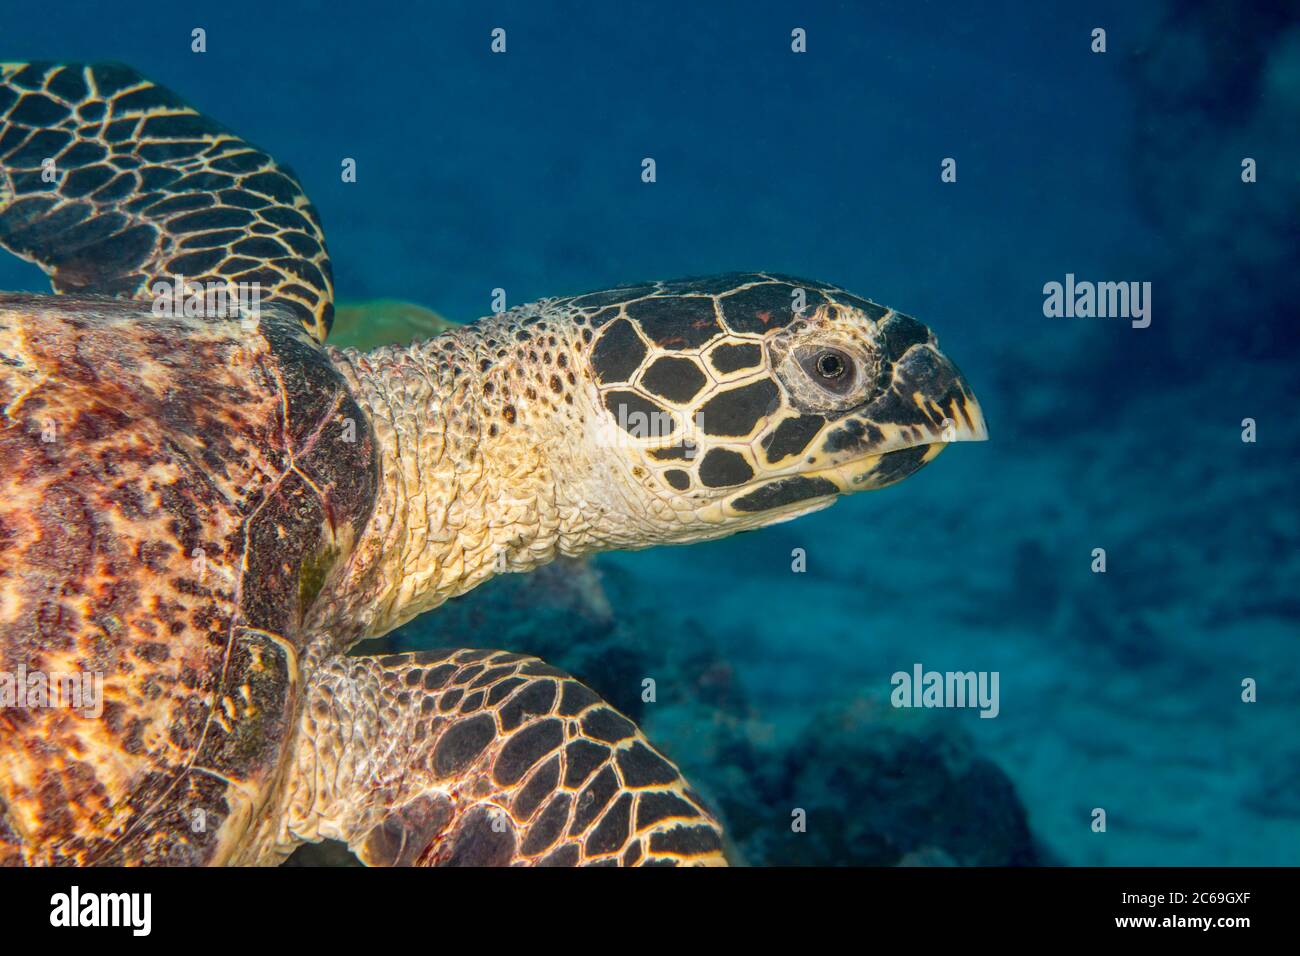 Uno sguardo ravvicinato alla testa di una tartaruga di falksbill, Eretmochelys imbricata, al largo dell'isola di Yap, Micronesia., Oceano Pacifico. Foto Stock